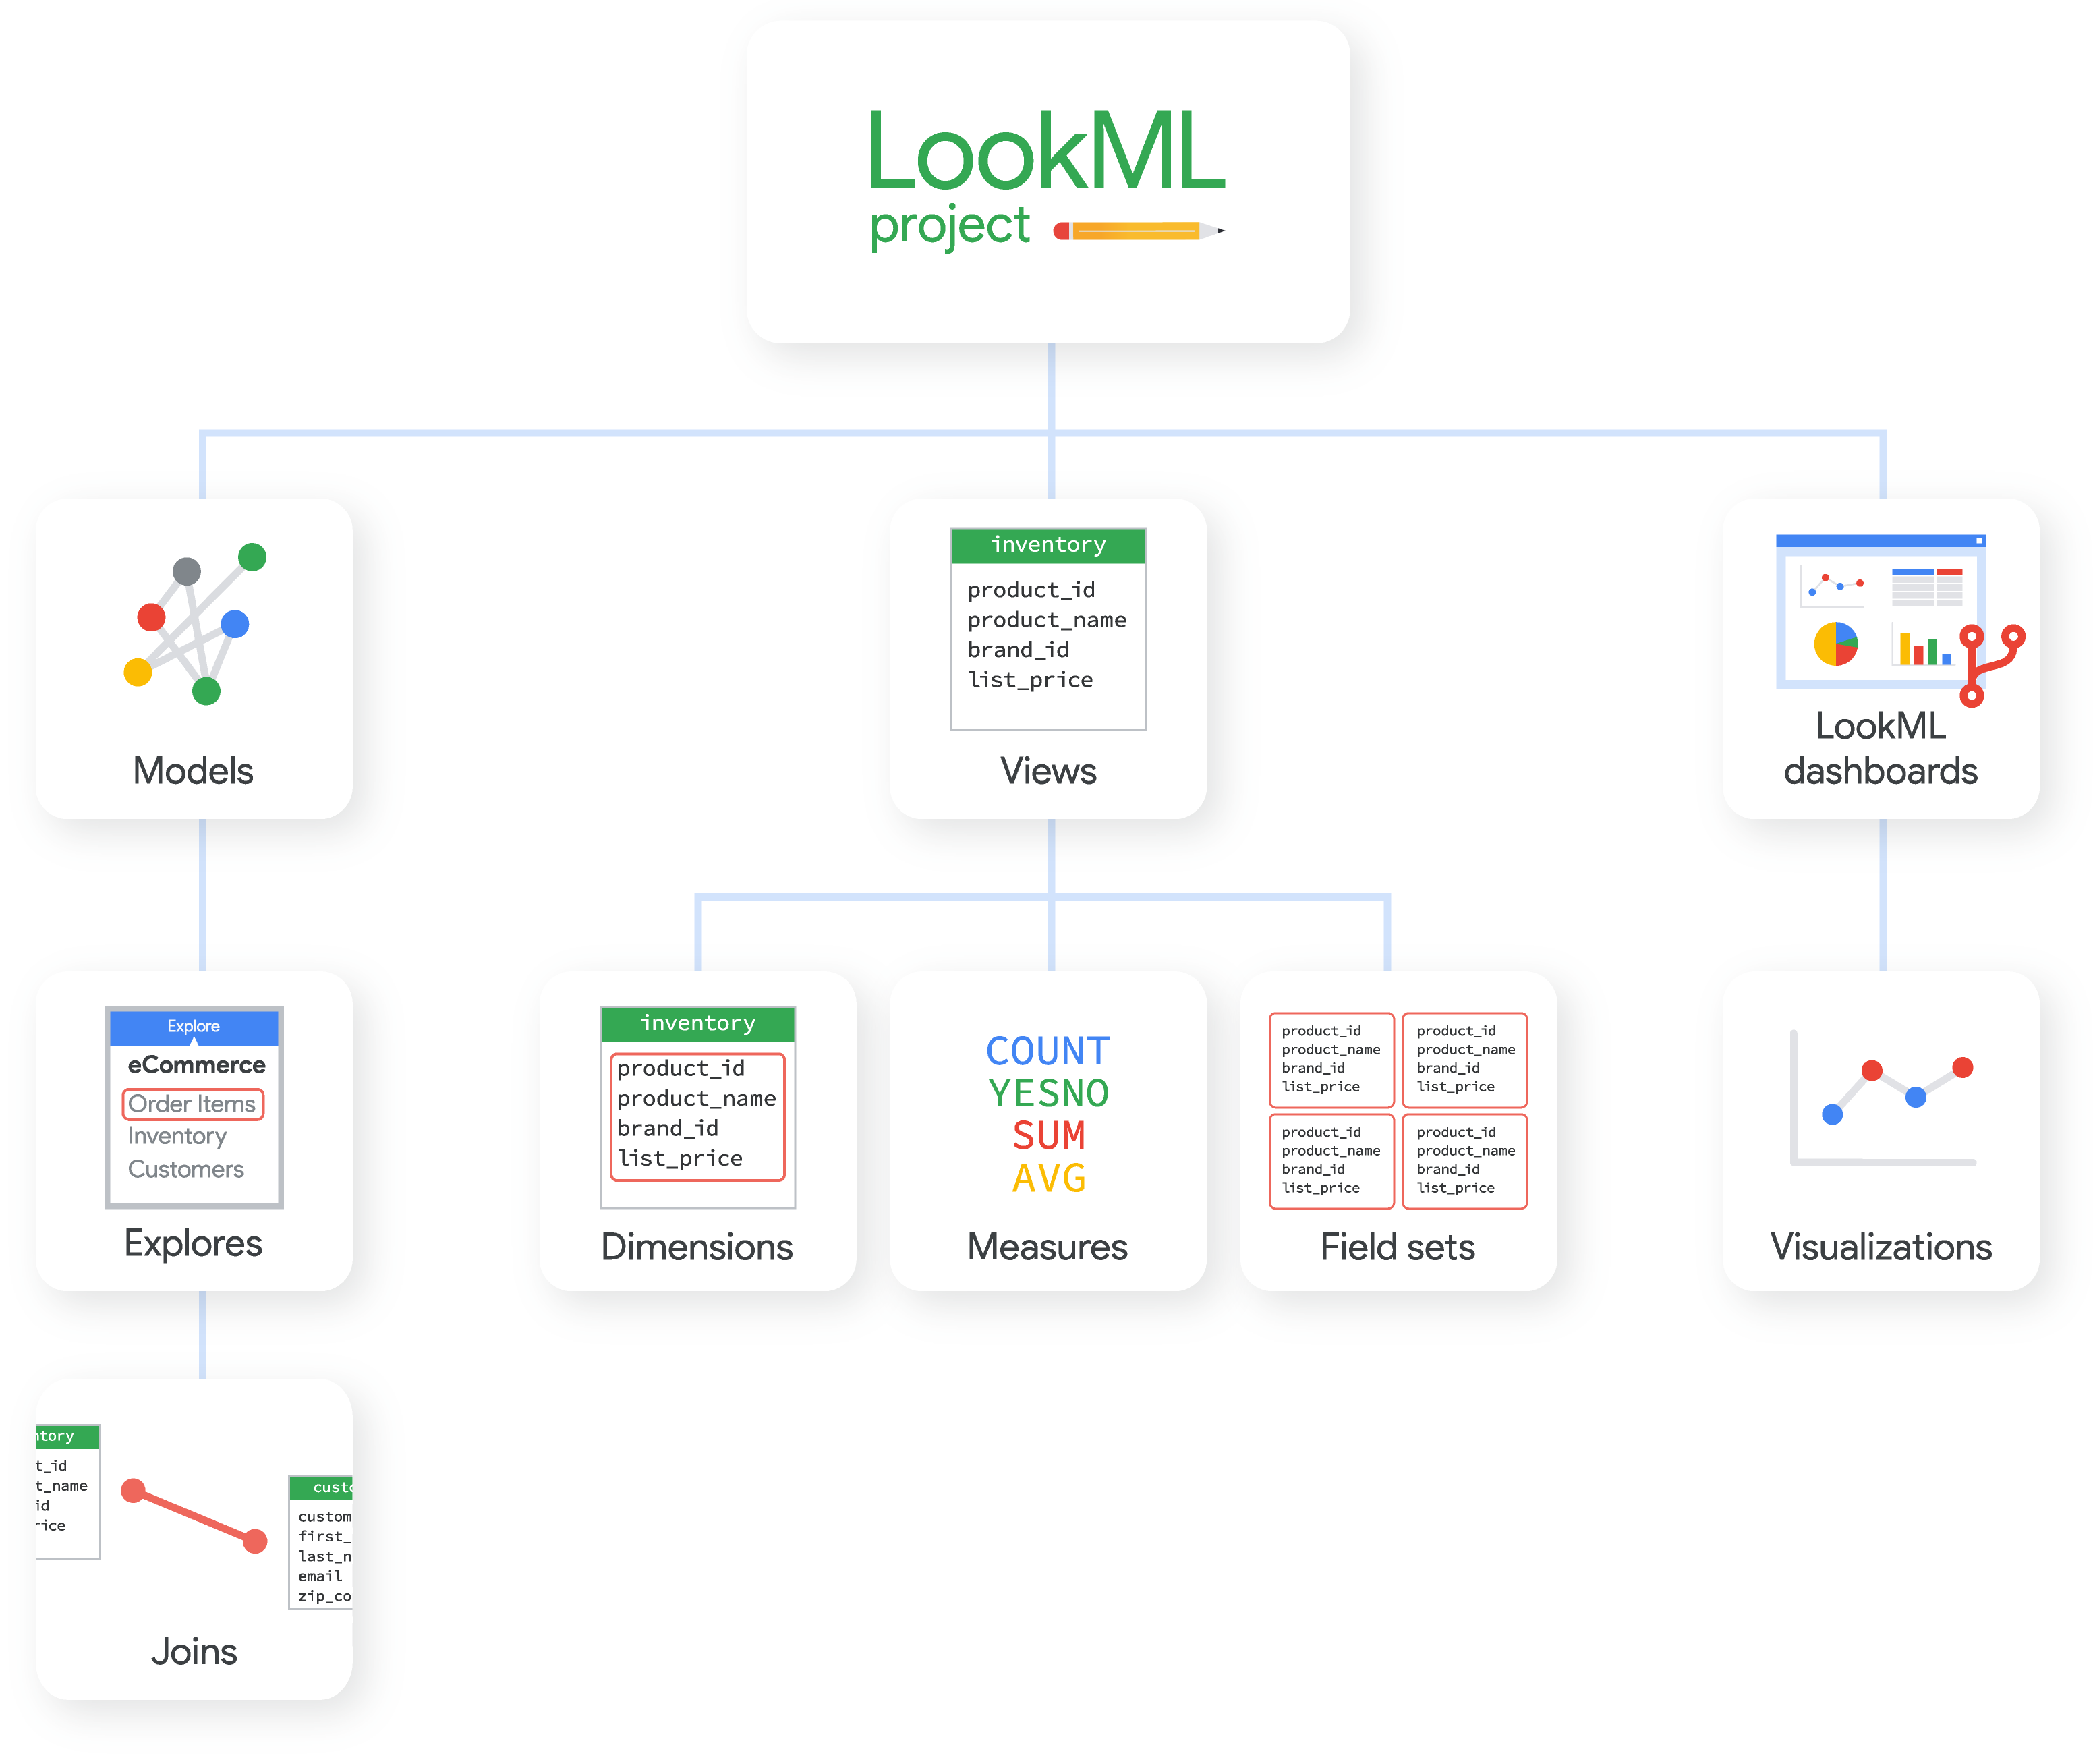 Um projeto do LookML pode conter modelos, visualizações e dashboards do LookML. Cada um deles é composto de outros elementos do LookML.